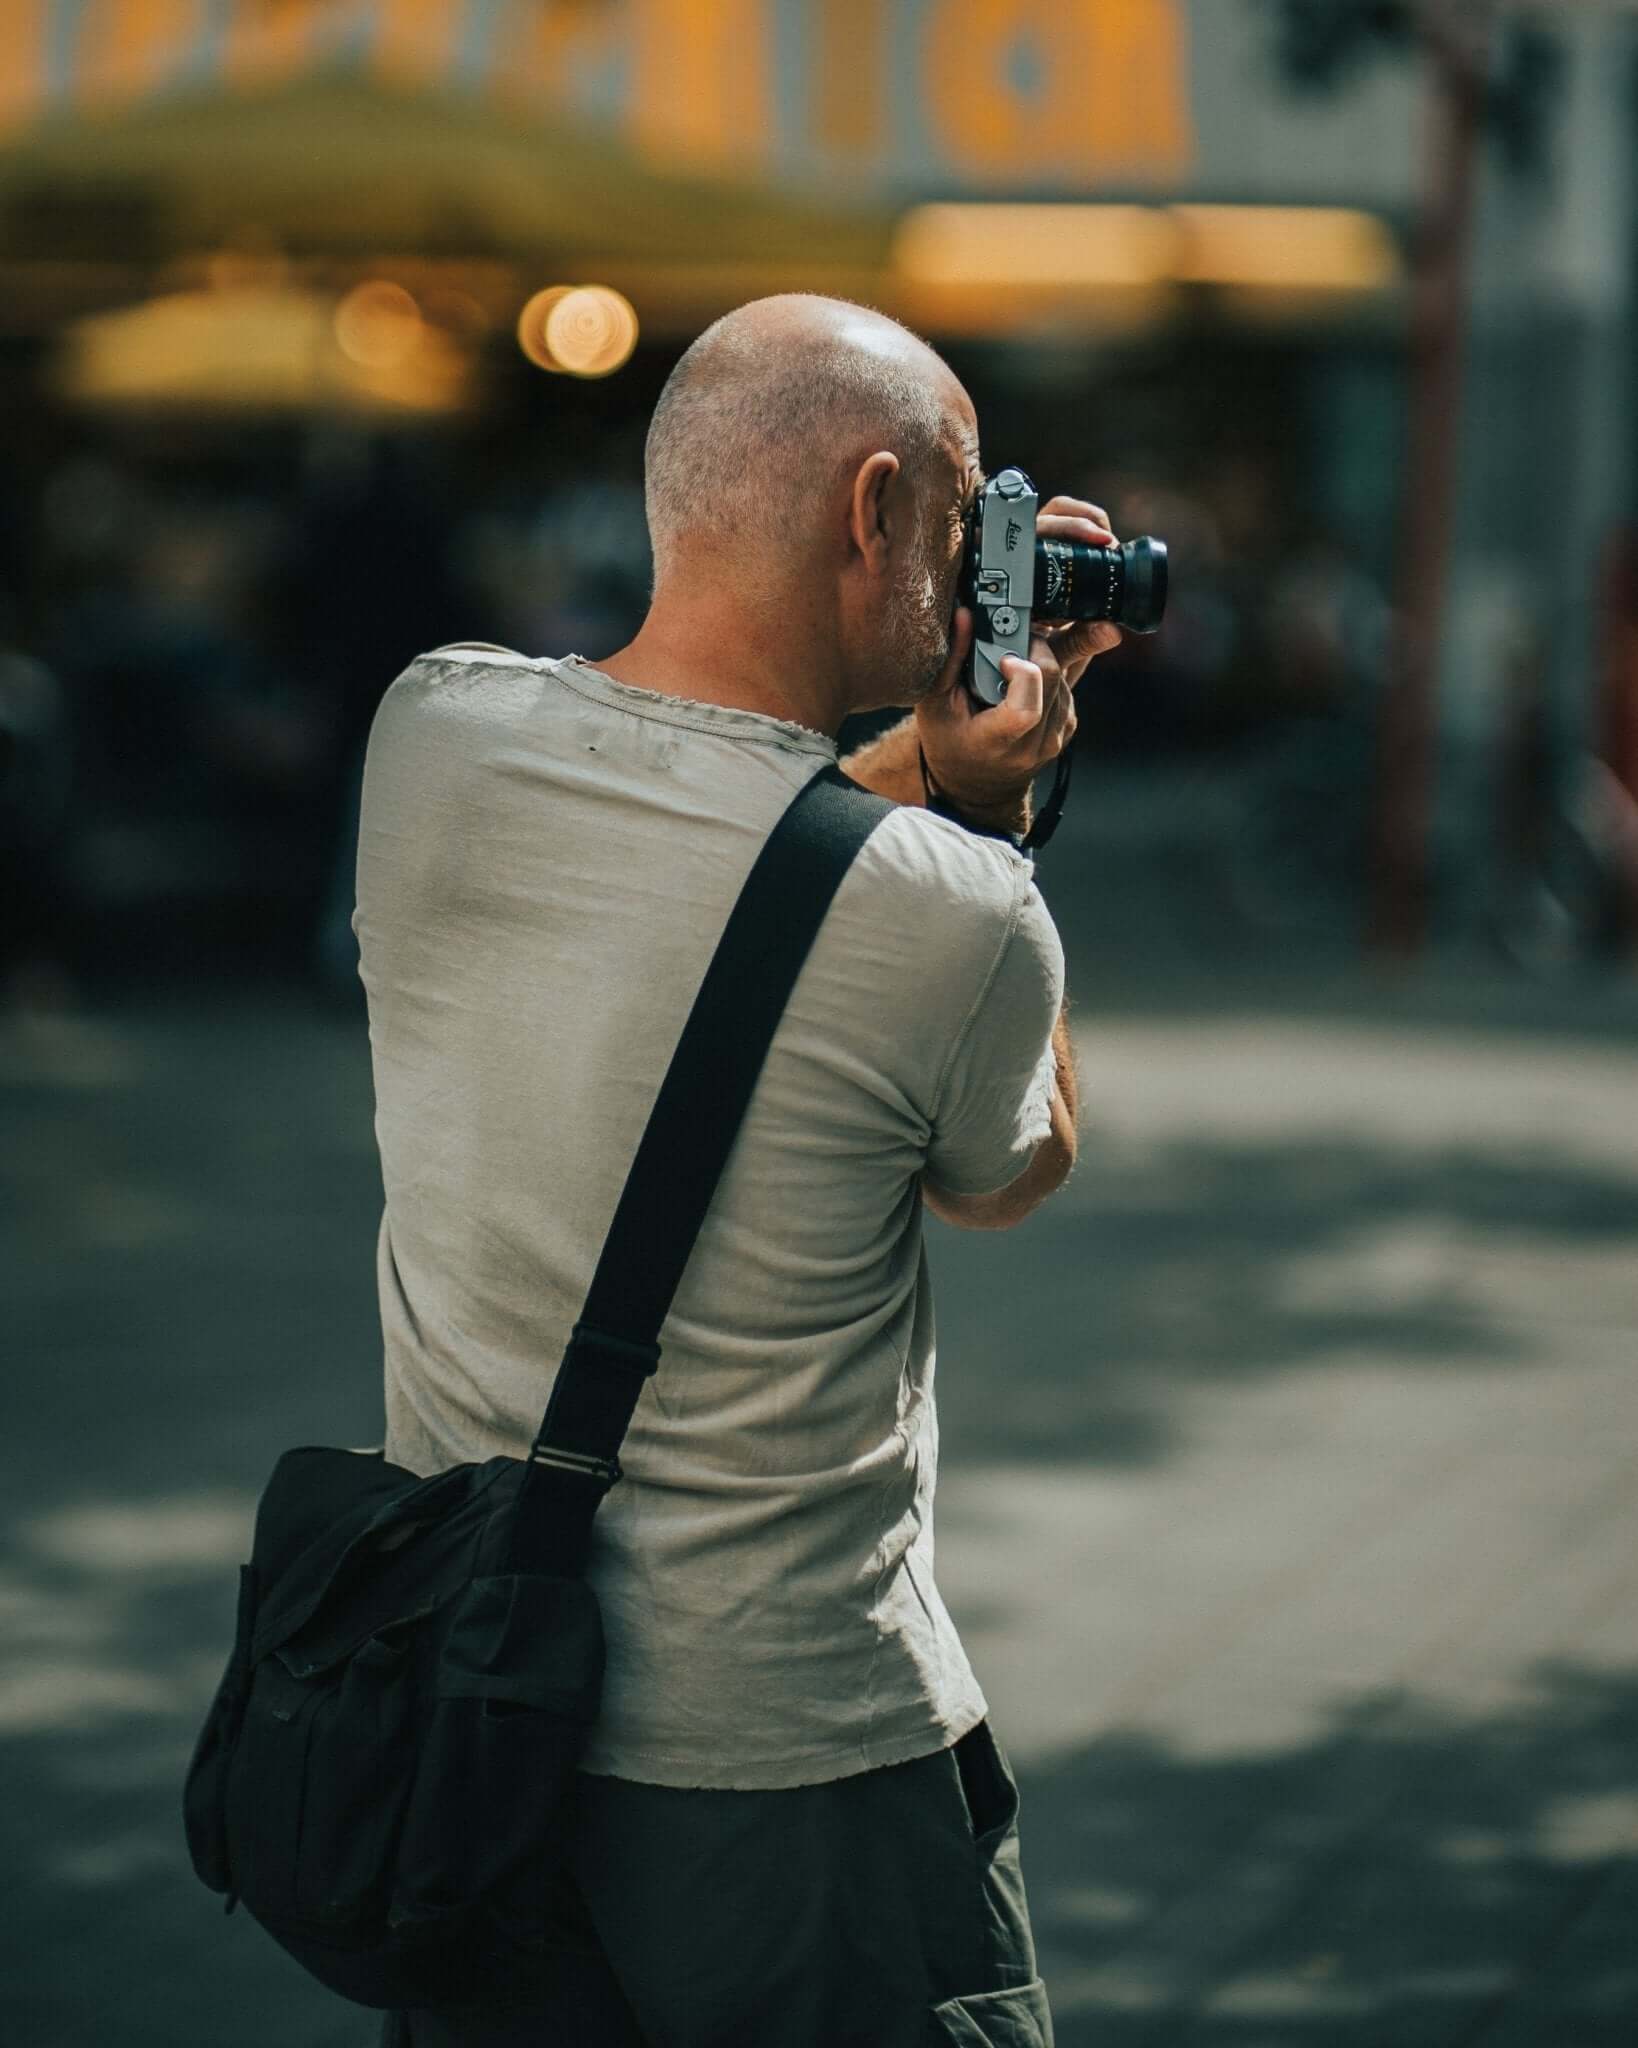 Ist die Leica M die beste Street-Fotografie Kamera?